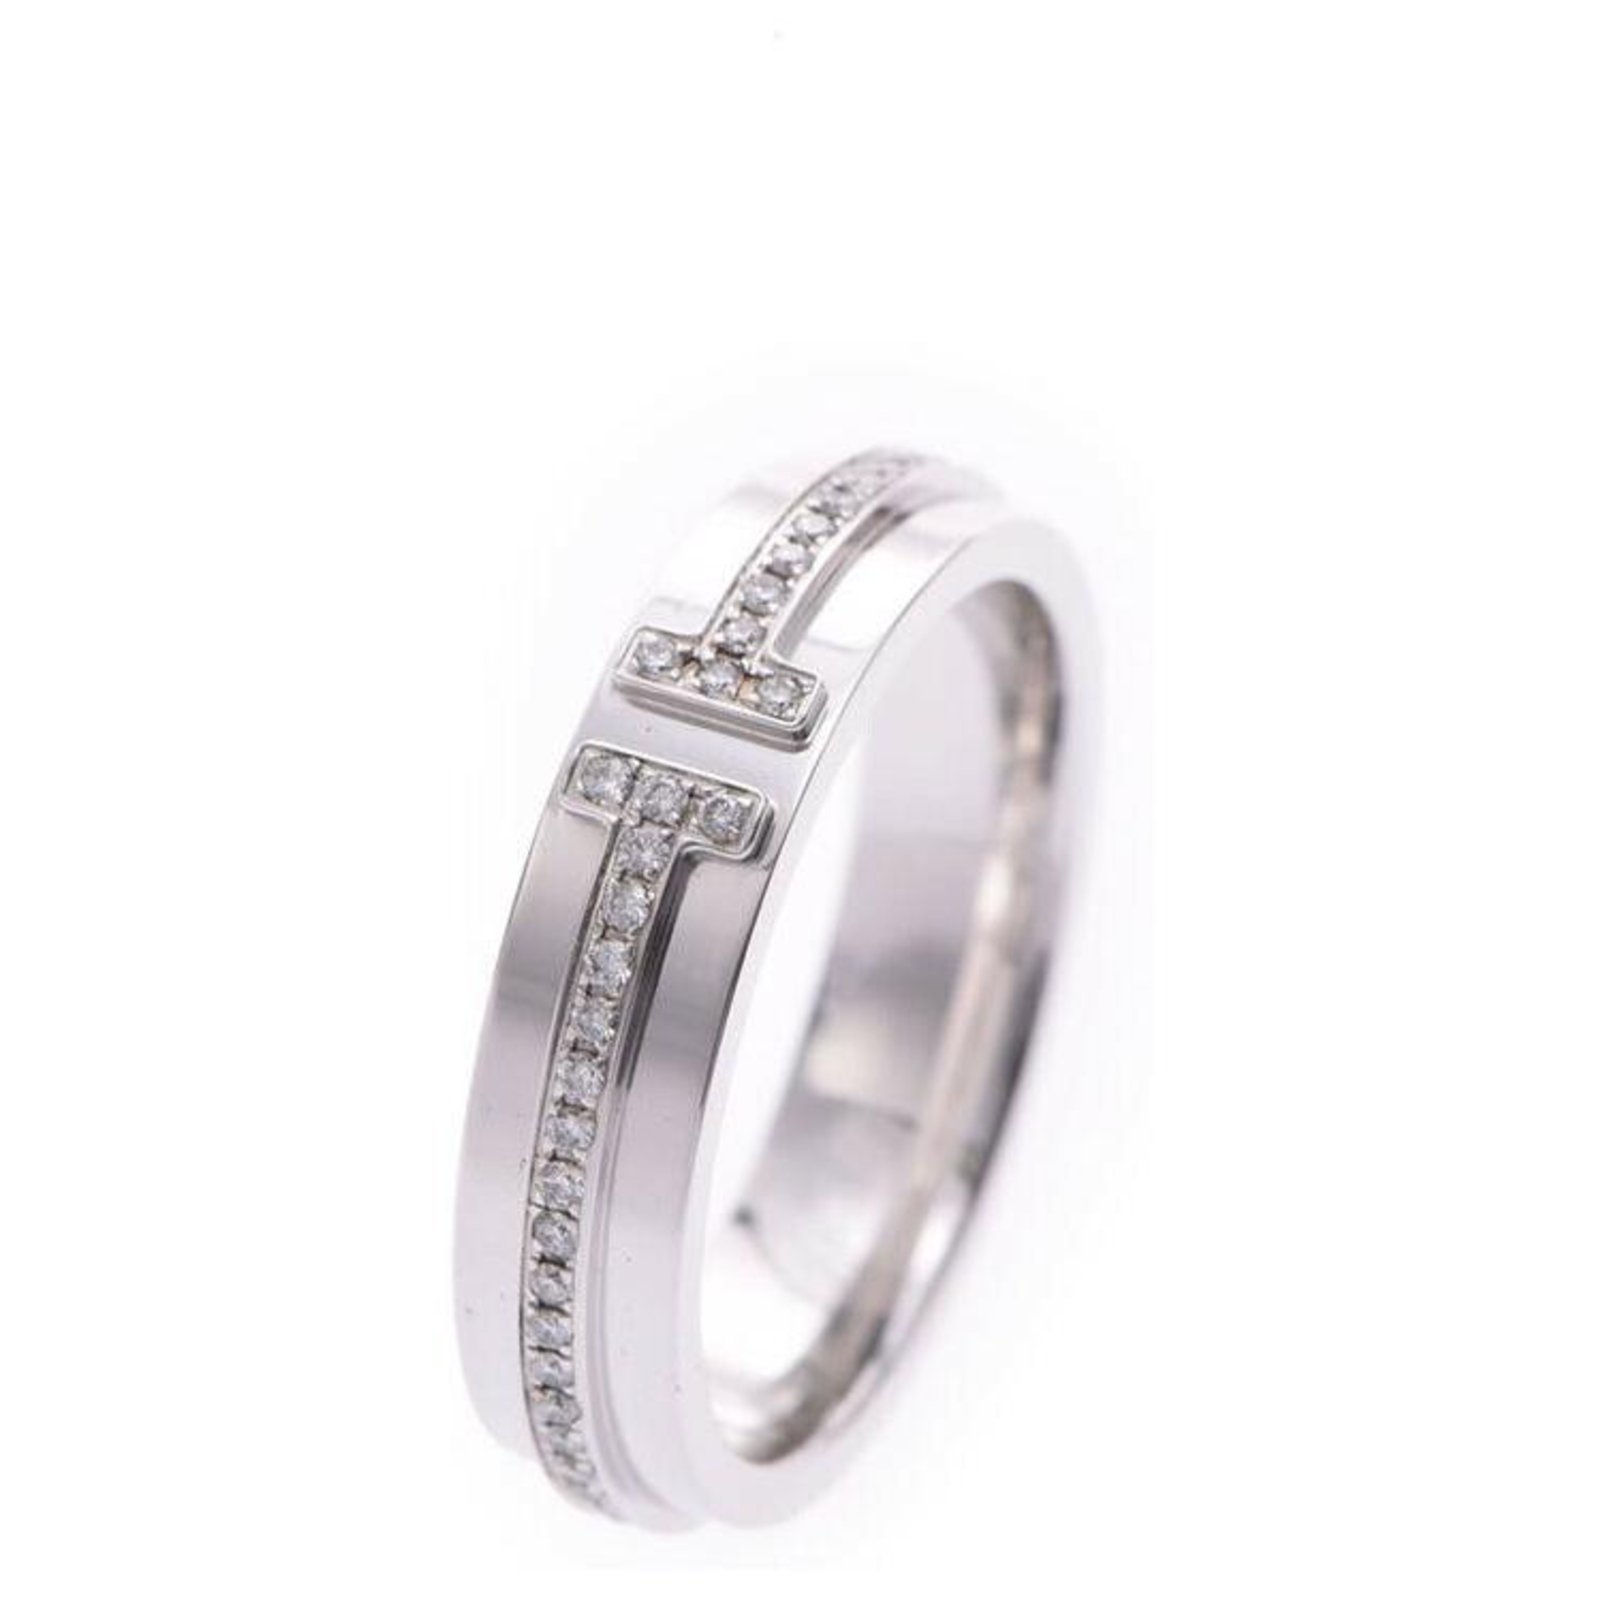 Tiffany & Co. T Diamond Ring in 18k White Gold 0.12 CTW | eBay